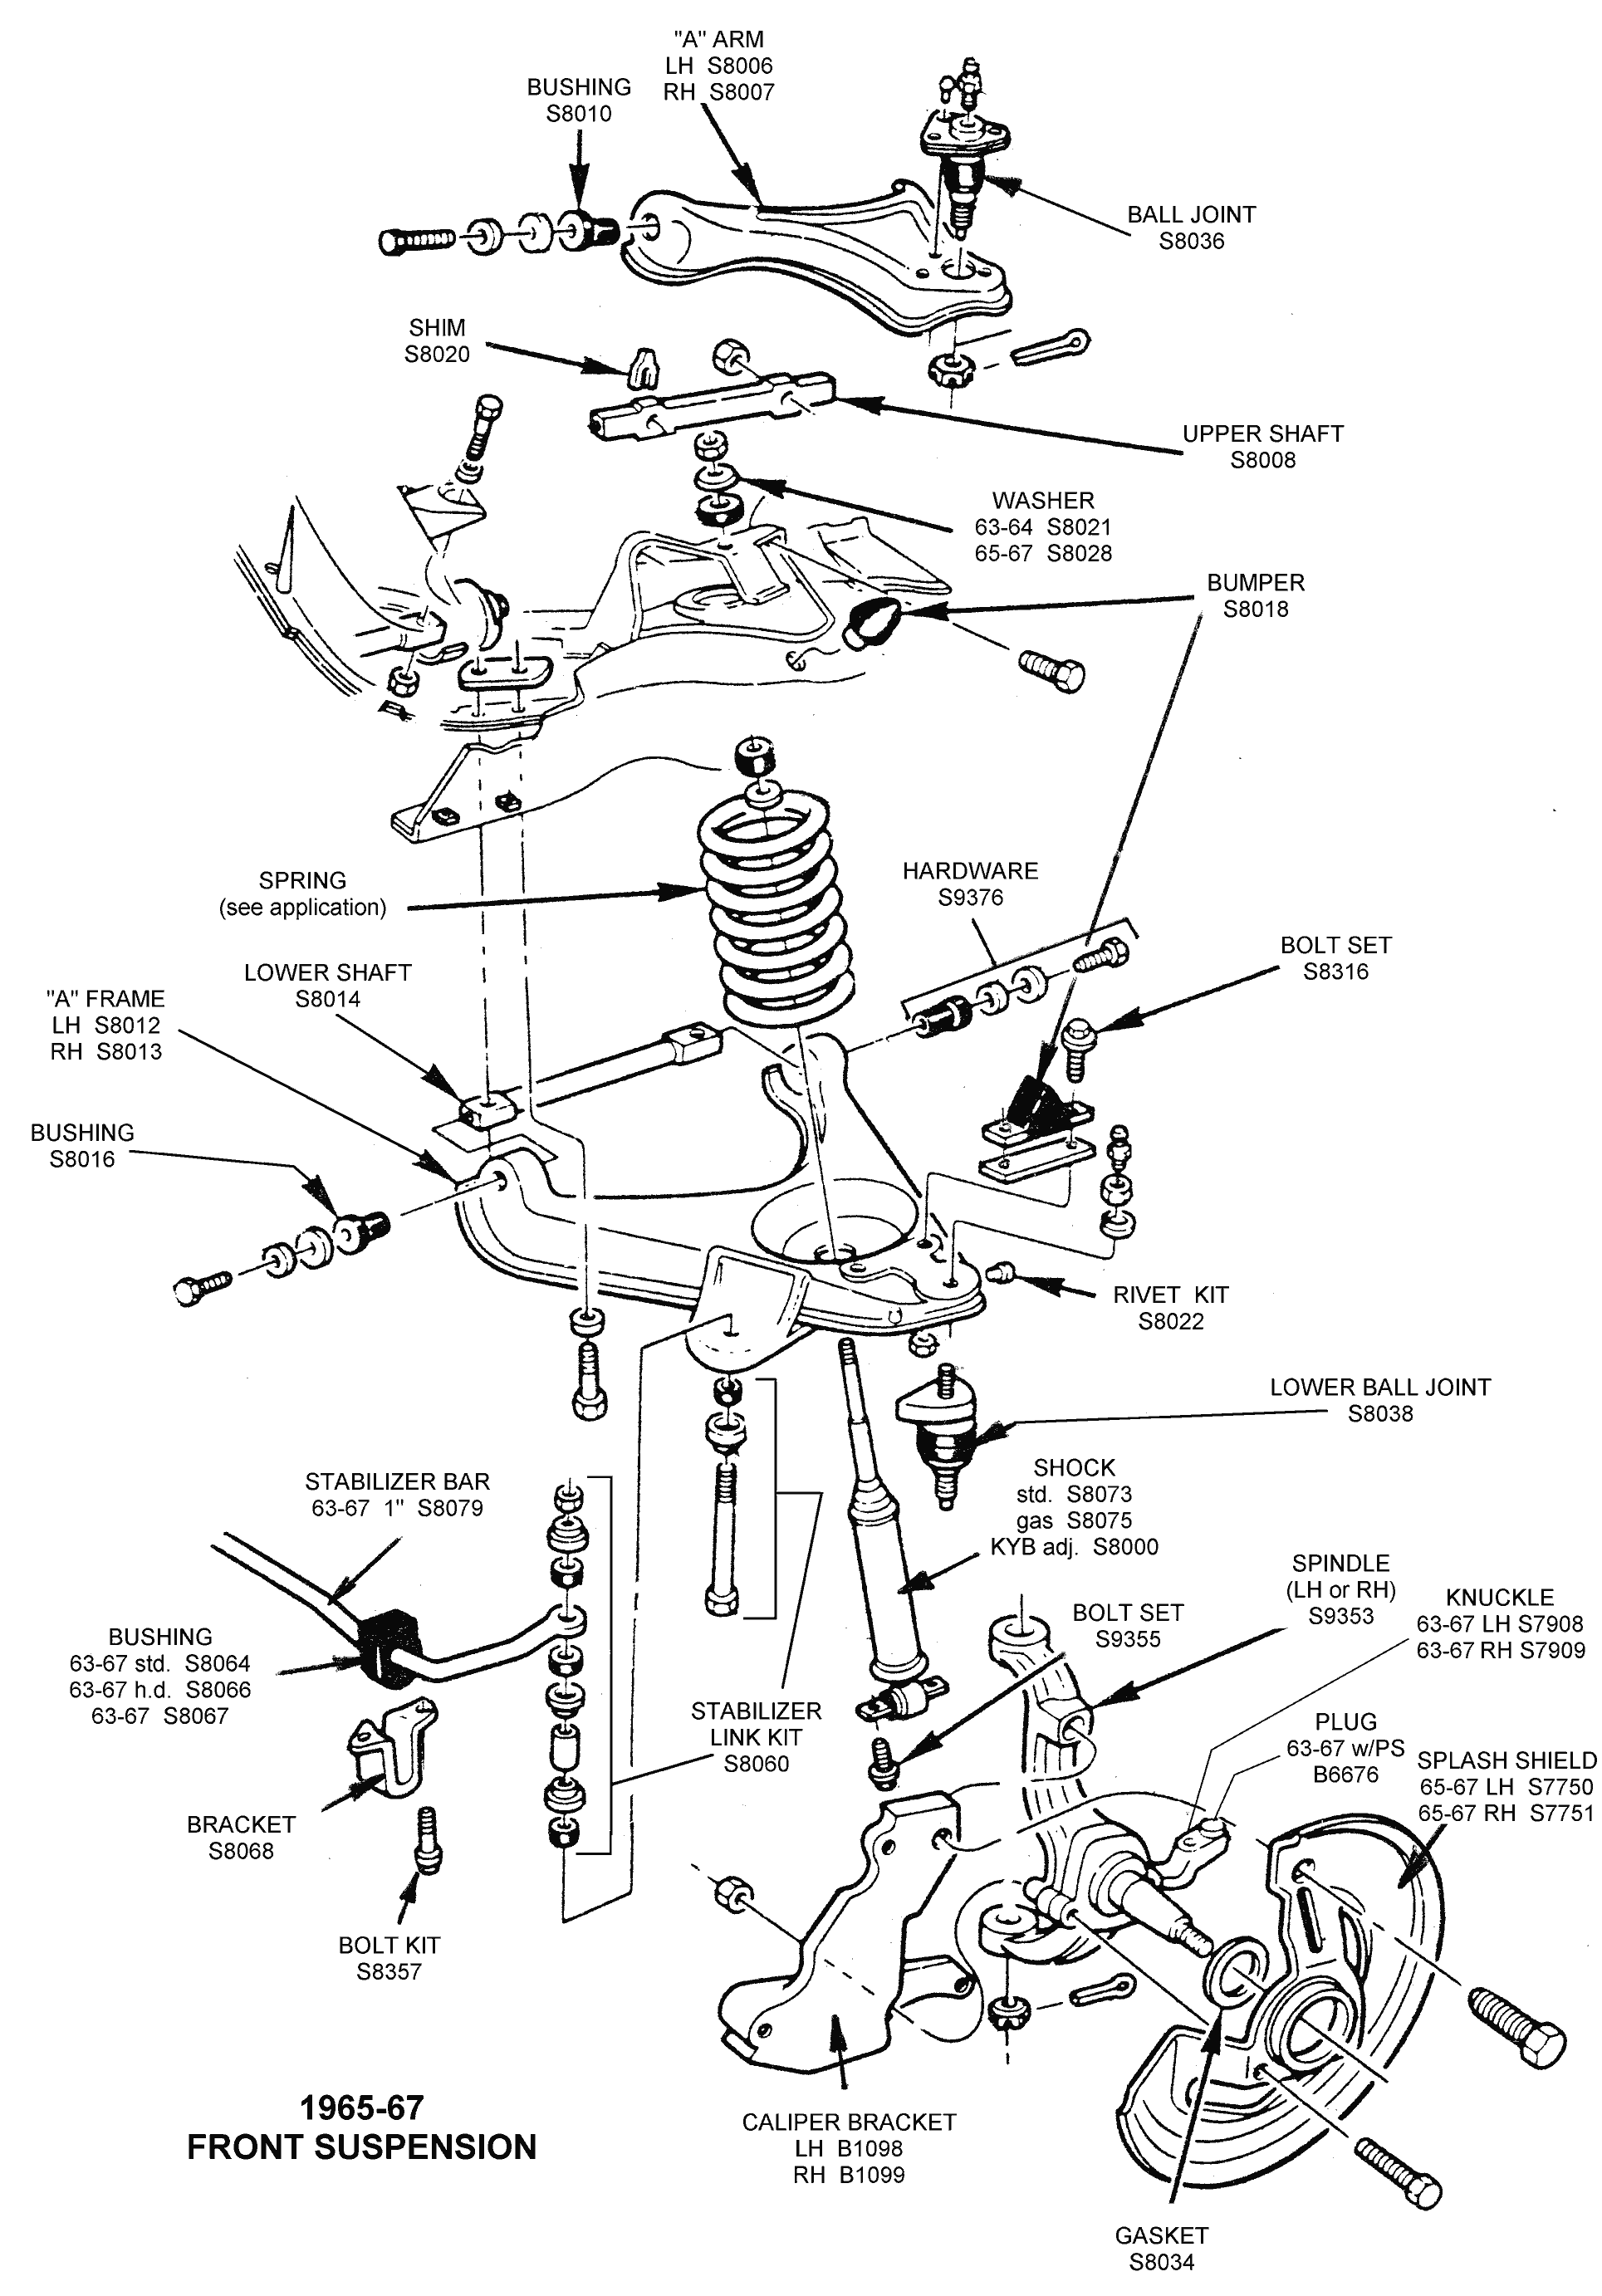 Diagram Of Front Suspension